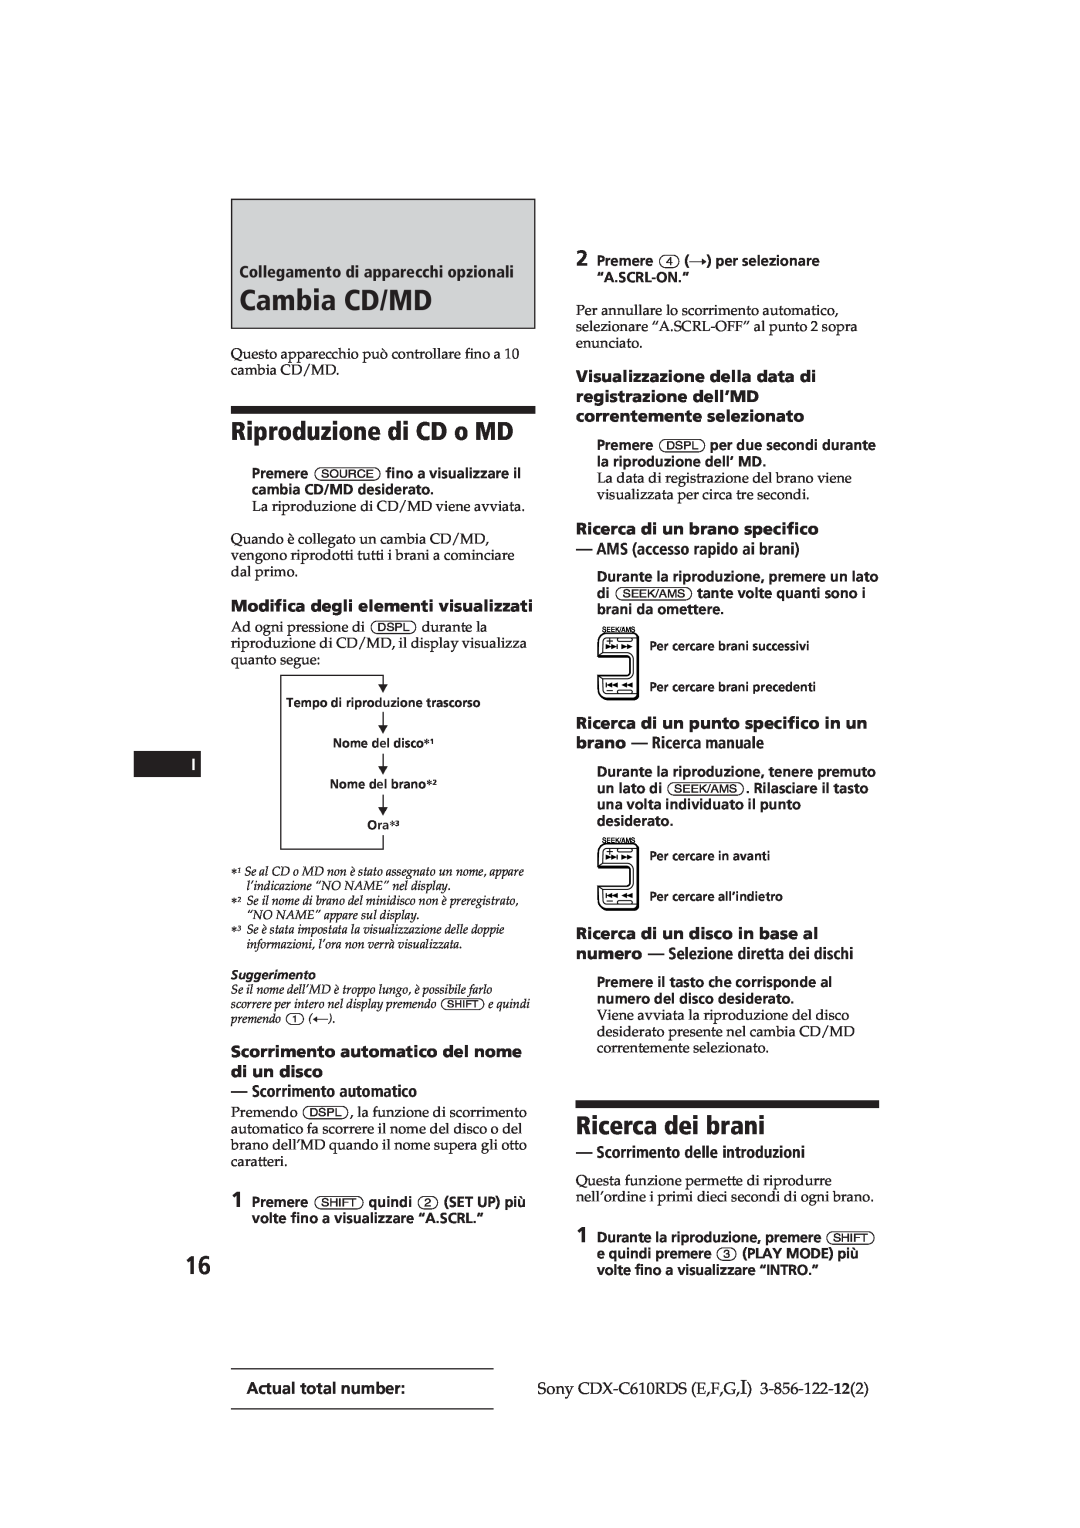 Sony CDX-C610RDS manual Cambia CD/MD, Riproduzione di CD o MD, Ricerca dei brani, Collegamento di apparecchi opzionali 